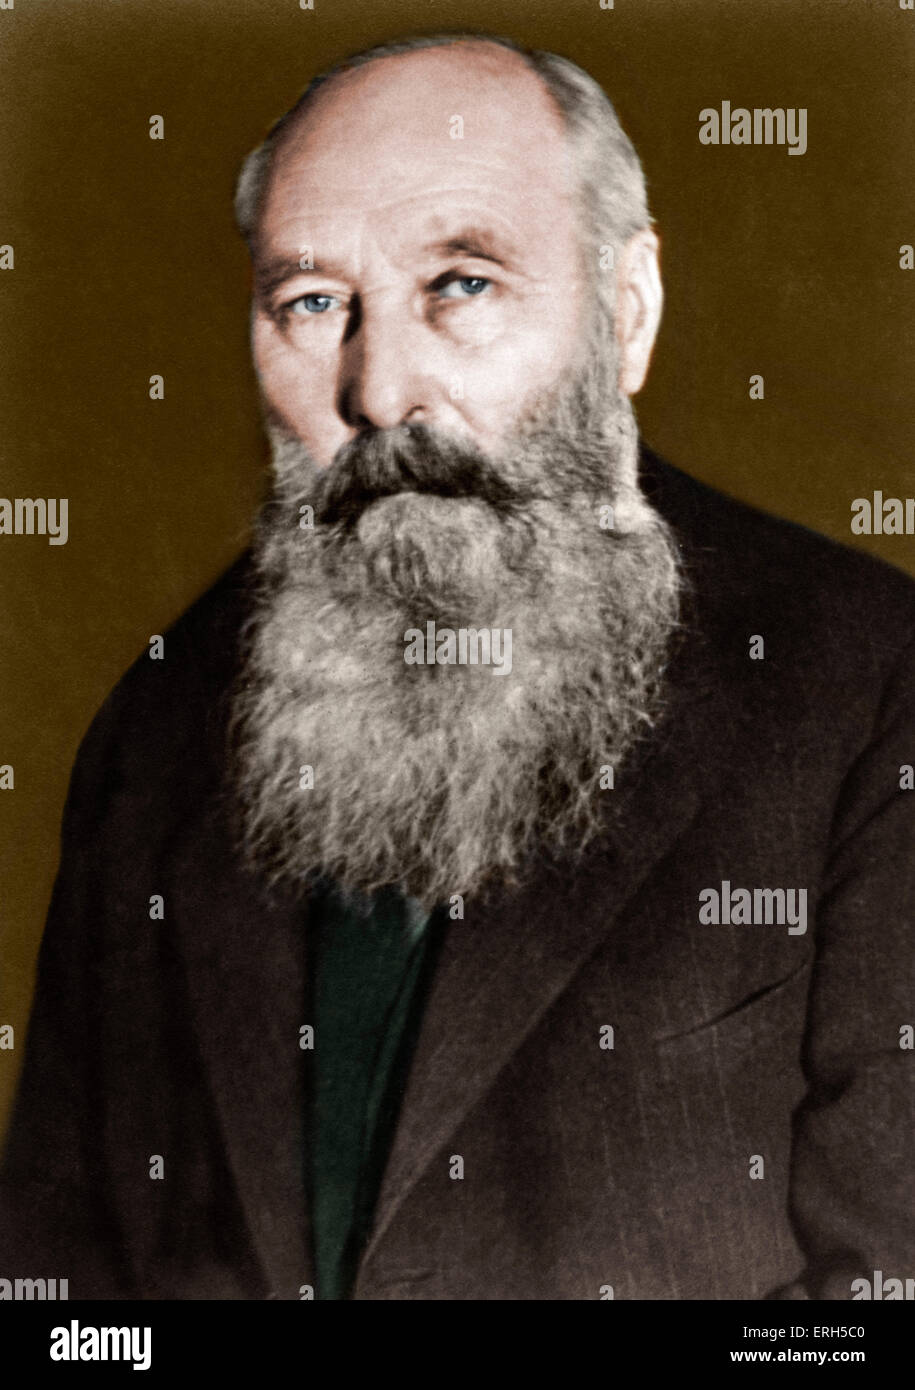 Guy ROPARTZ - retrato del escritor francés, compositor y director de orquesta. El 15 de junio de 1864 - 22 de noviembre de 1955. Colourised versión. Foto de stock